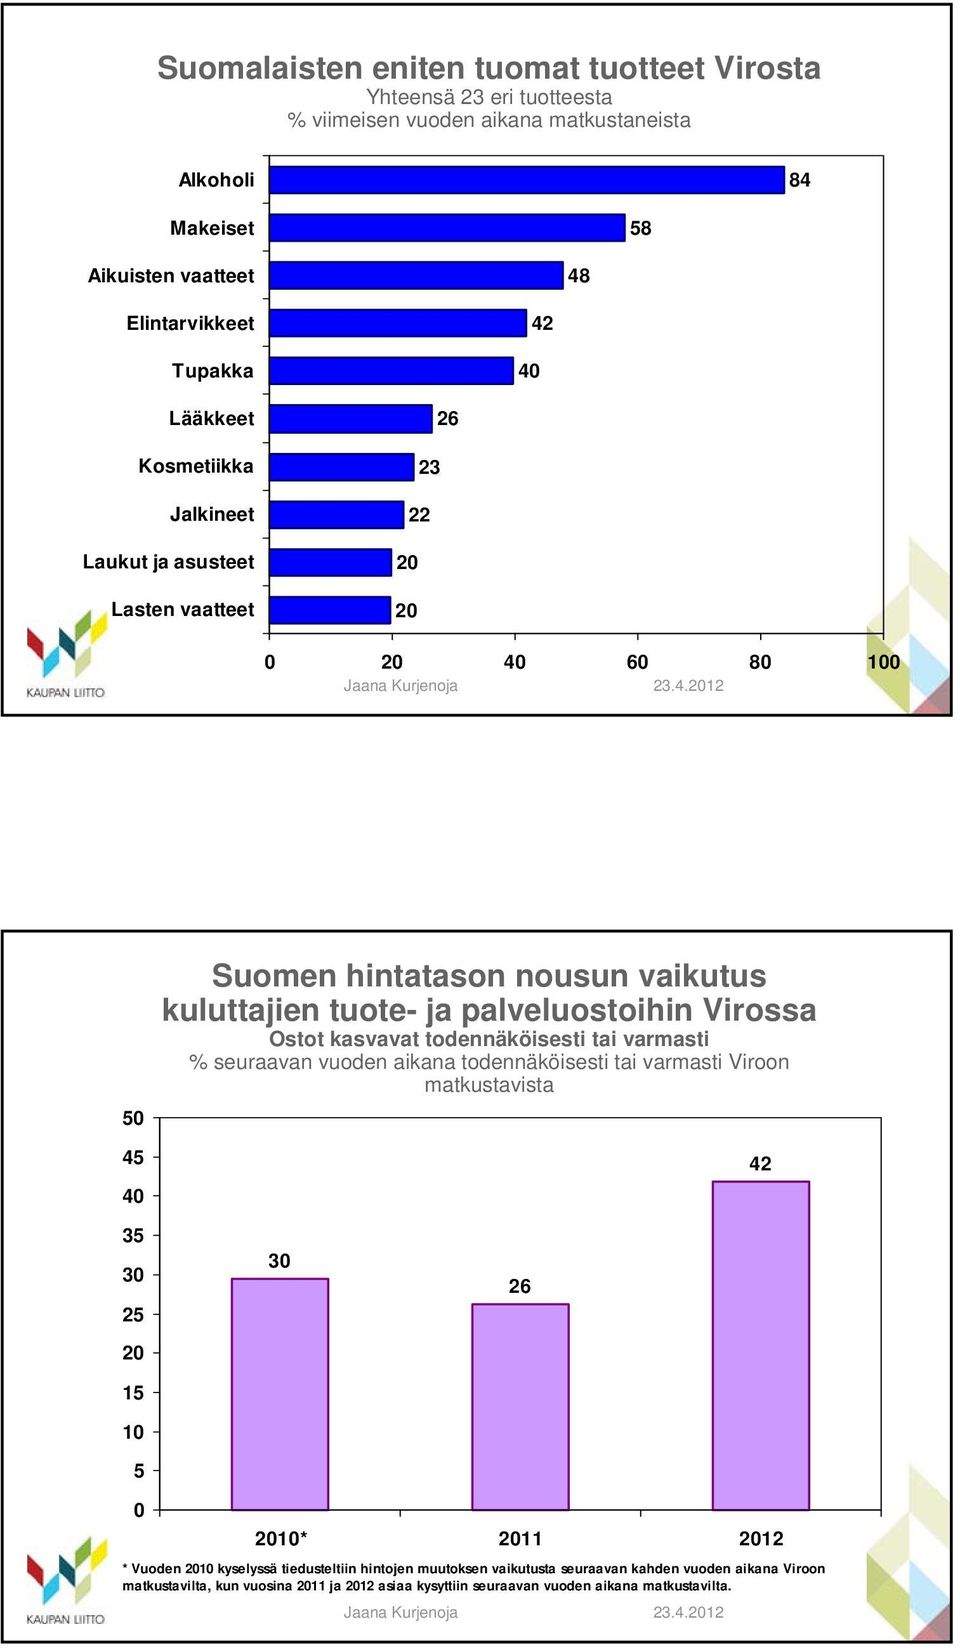 Virossa Ostot kasvavat todennäköisesti tai varmasti % seuraavan vuoden aikana todennäköisesti tai varmasti Viroon matkustavista 42 35 25 20 15 10 5 26 0 2010* 2011 2012 * Vuoden 2010